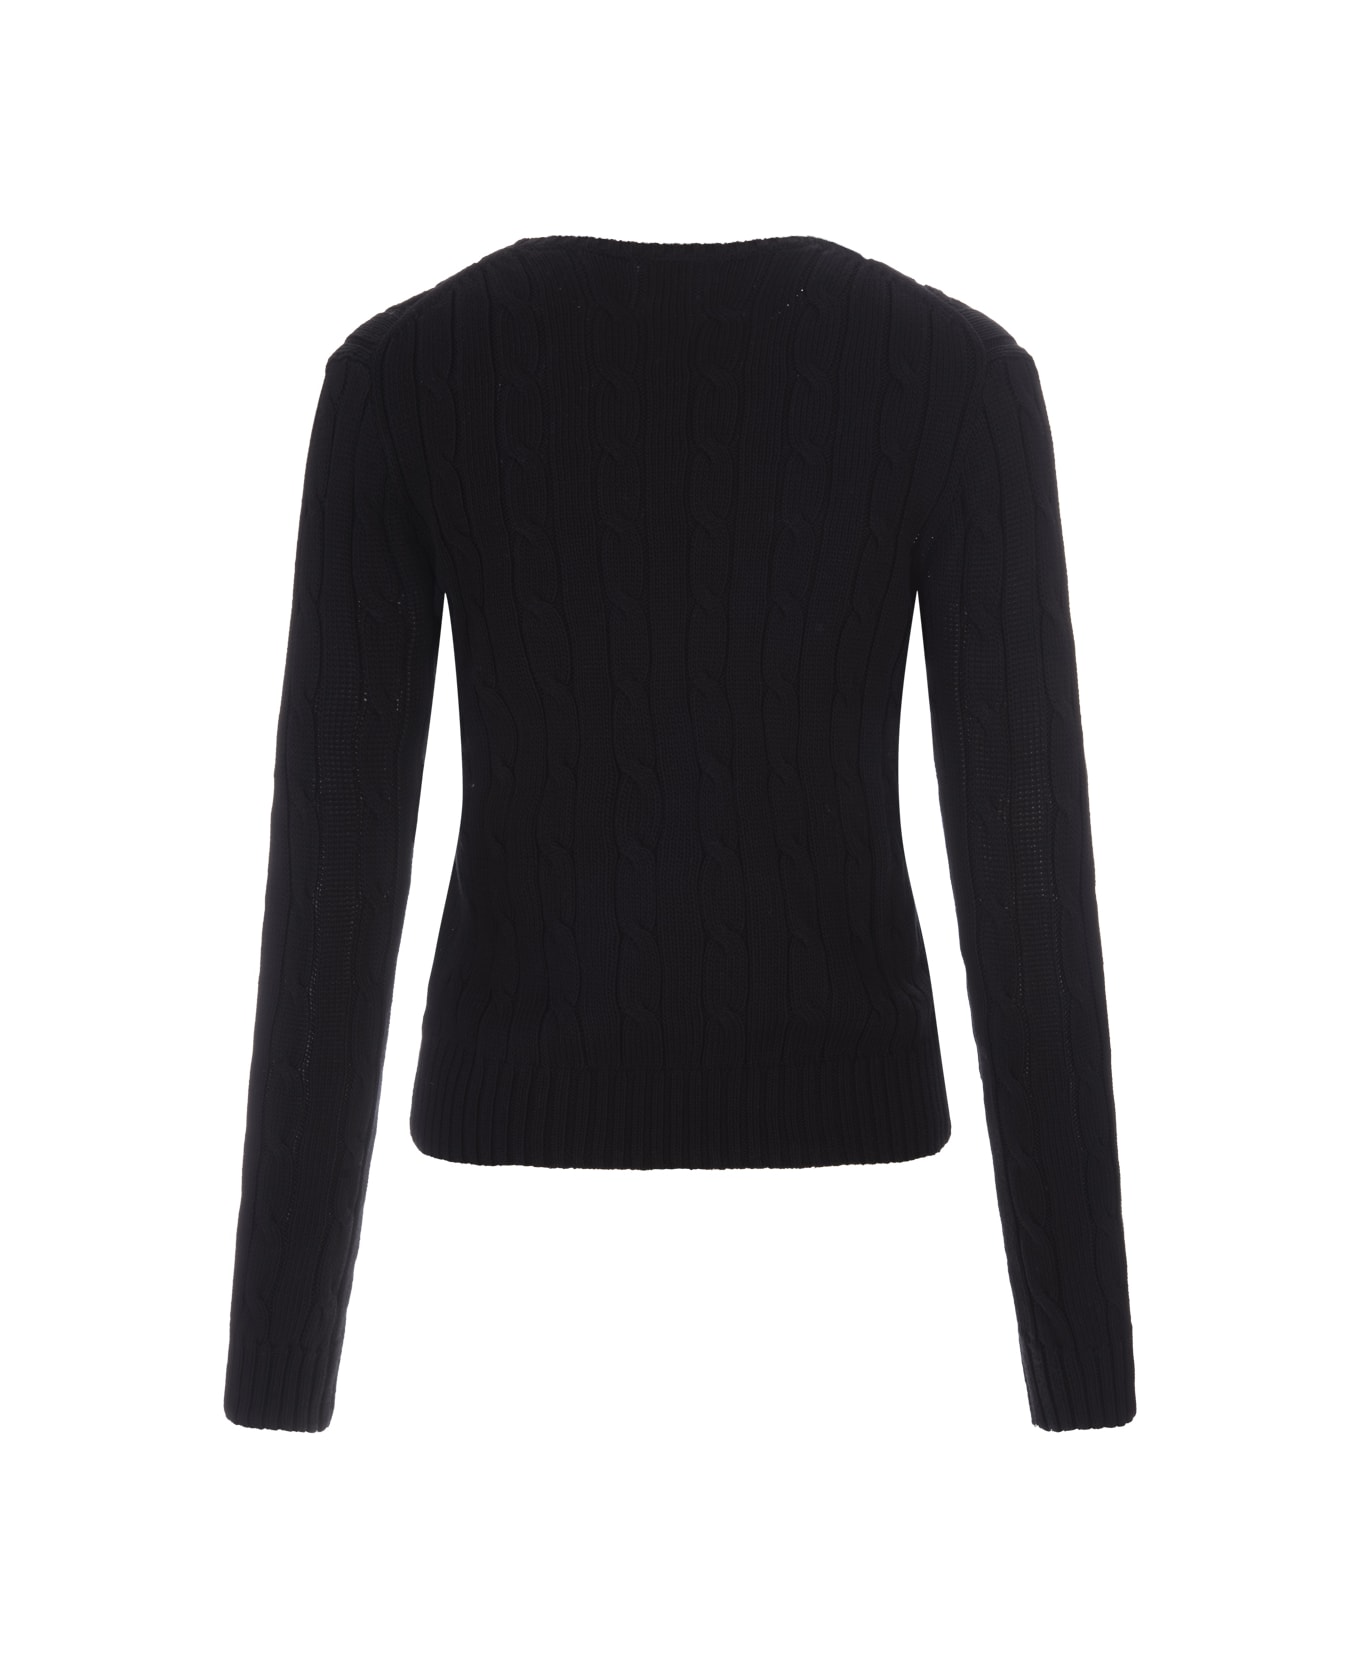 Ralph Lauren Crew Neck Sweater In Black Braided Knit - Black